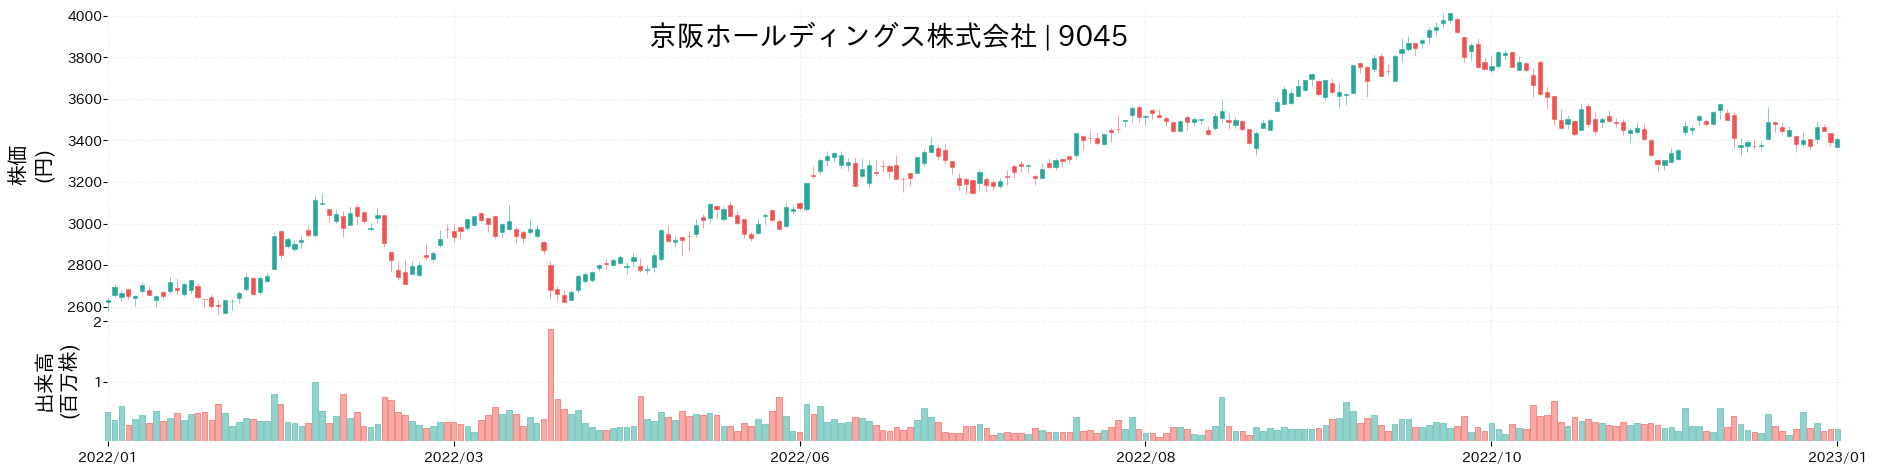 京阪ホールディングスの株価推移(2022)